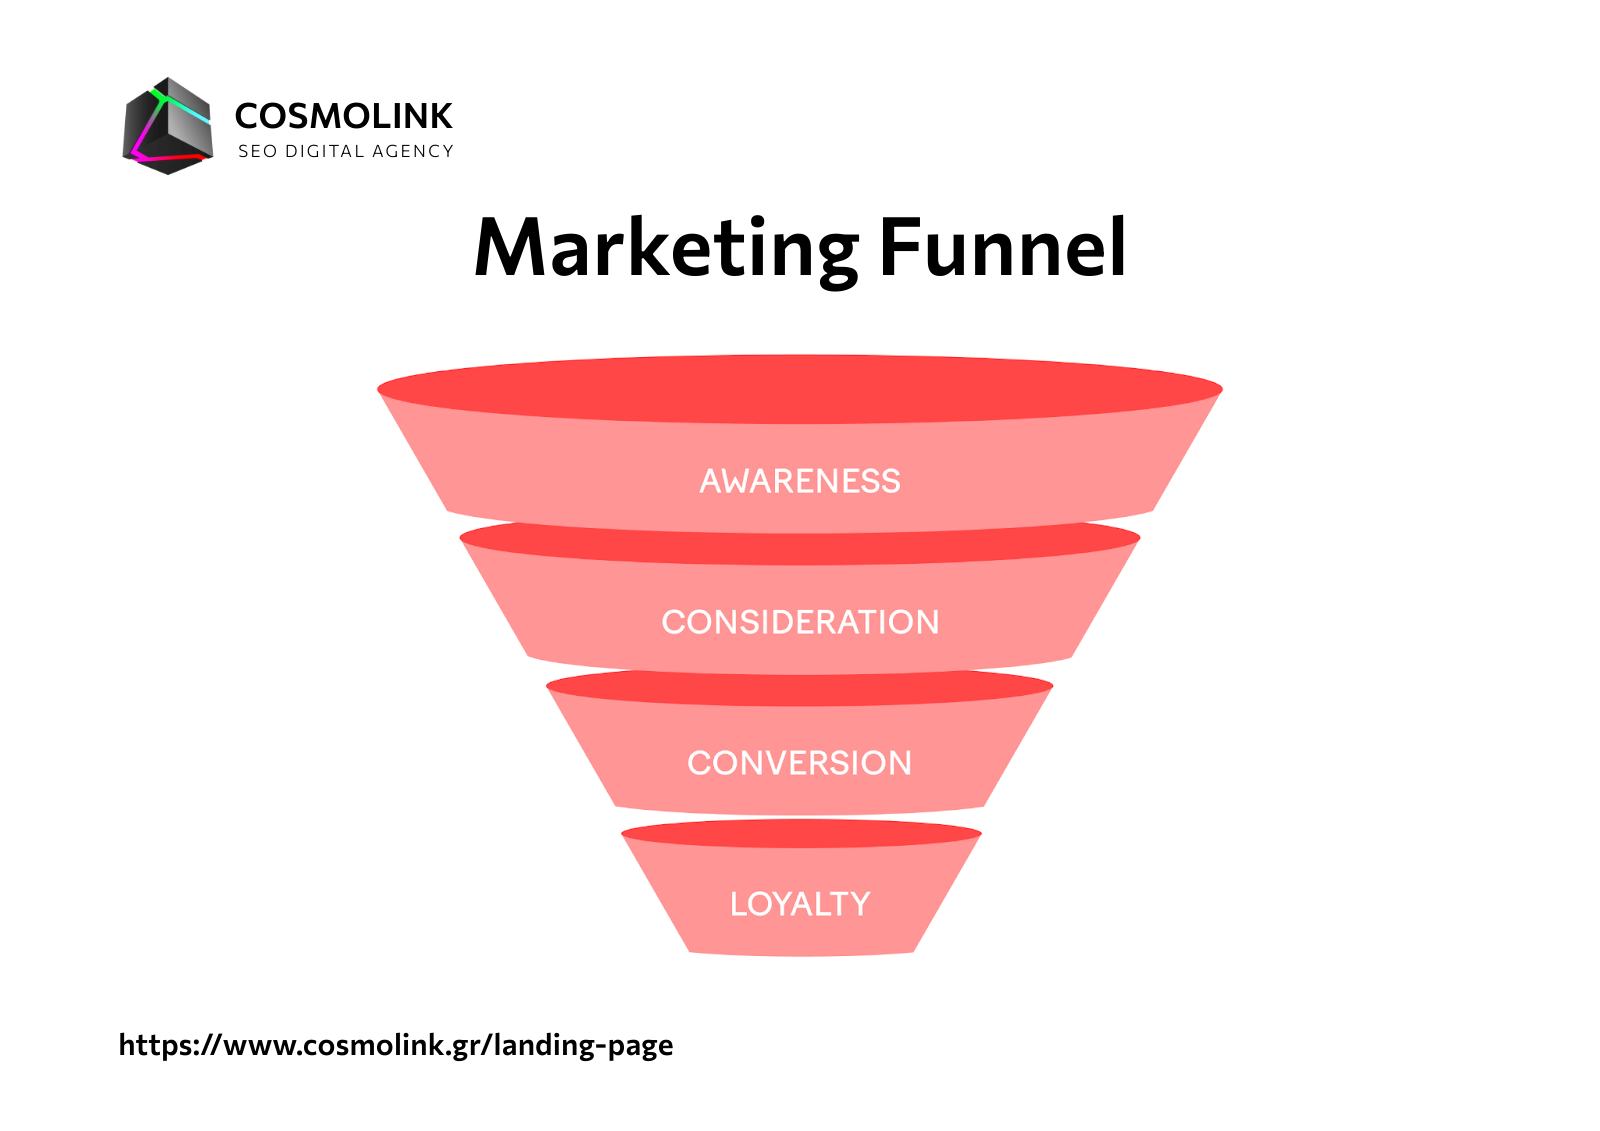 Τα στάδια του Marketing Funnel